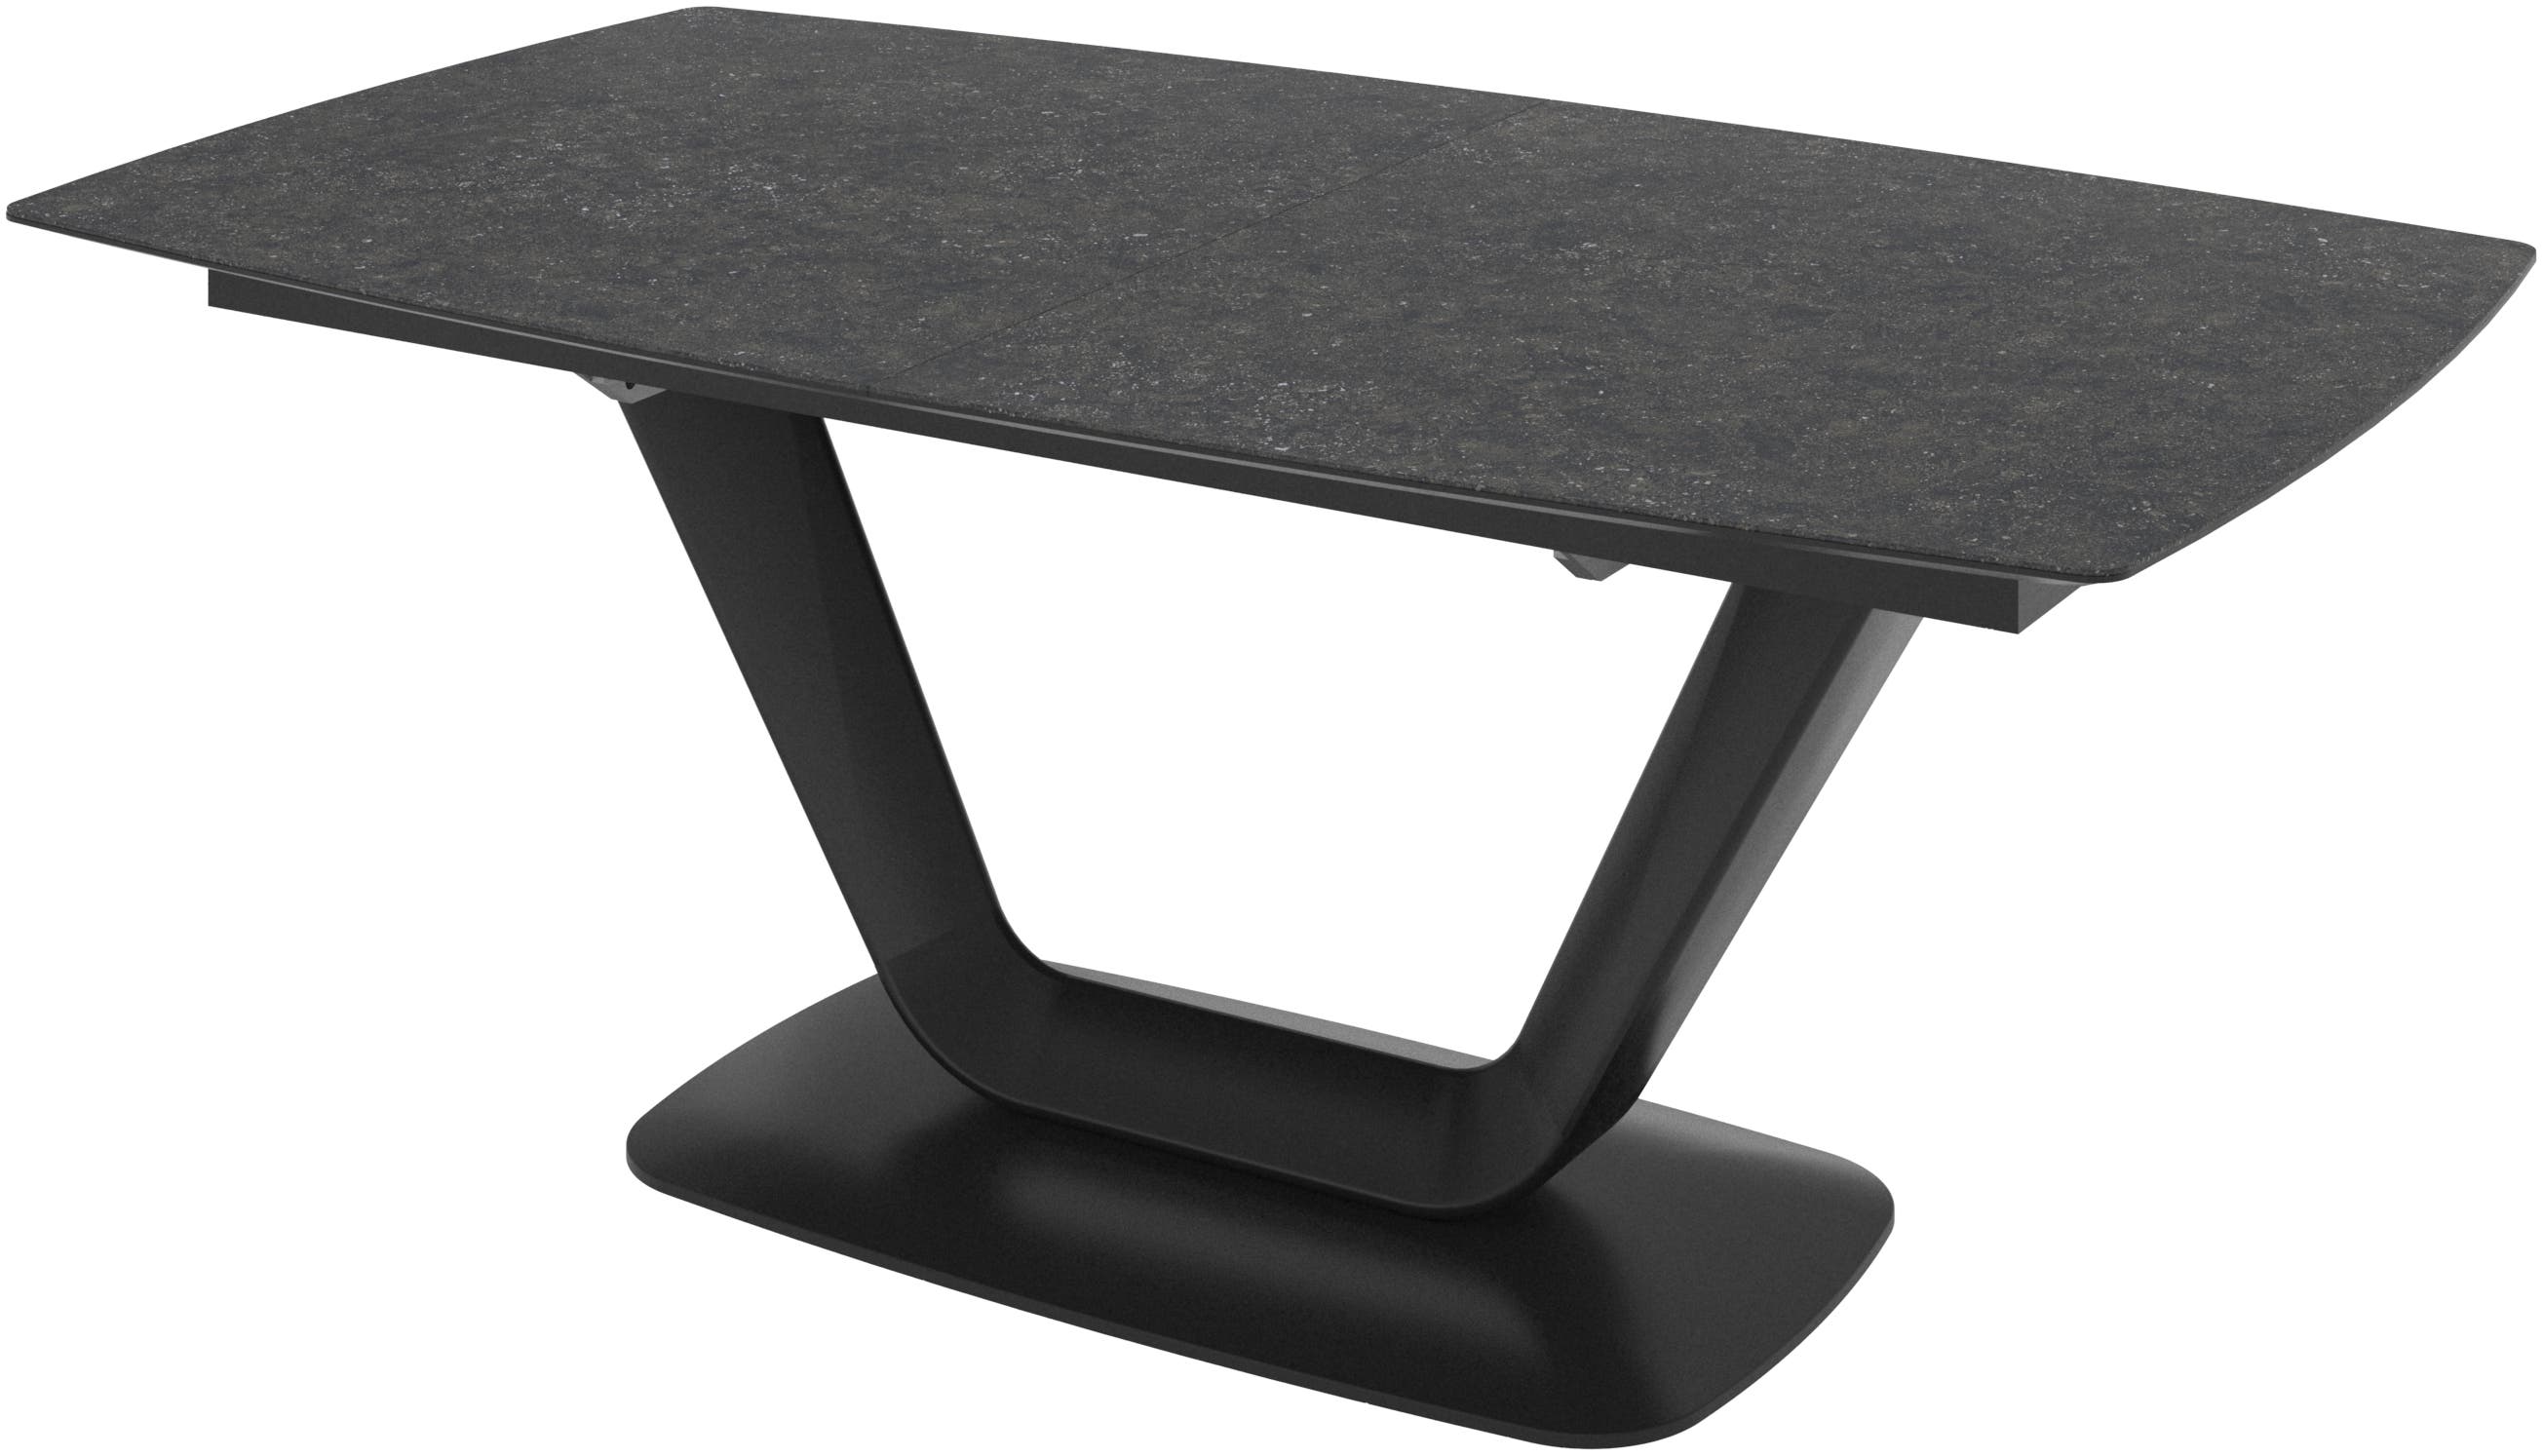 デザイナーテーブル | デンマークデザインの家具 | ボーコンセプト